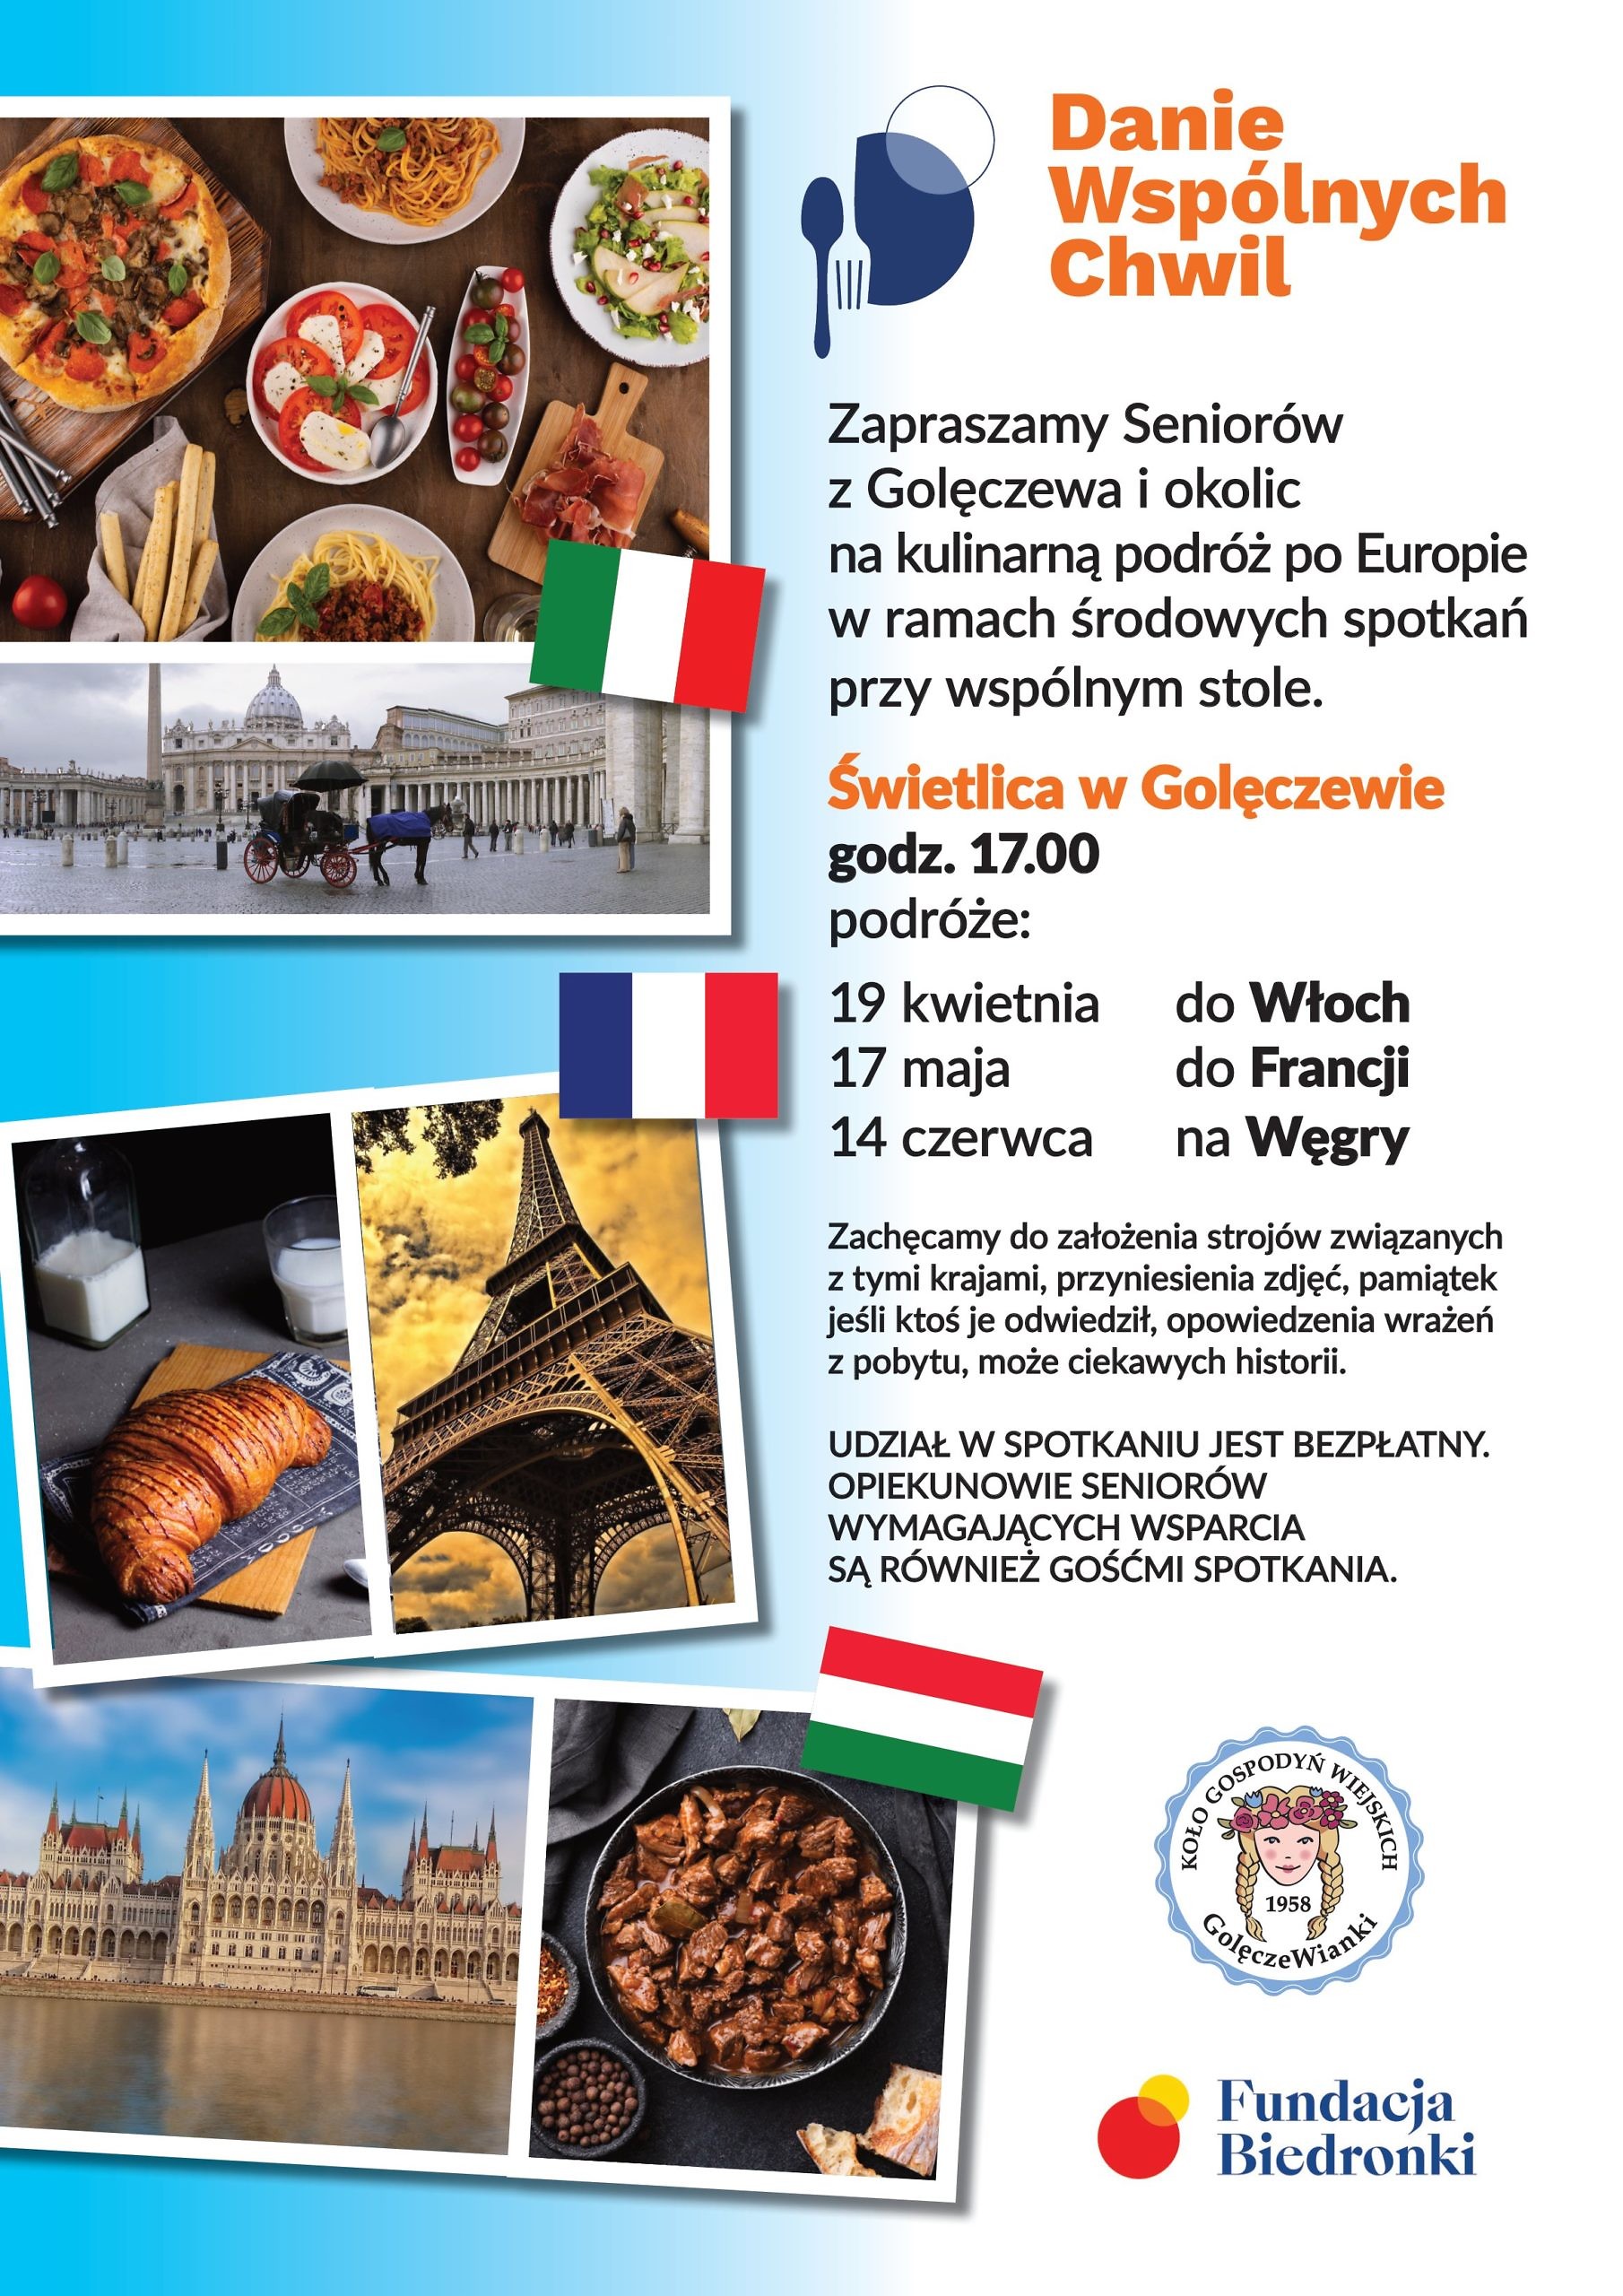 Danie Wspolnych Chwil plakat A3 Biedronka 1 scaled - KGW zaprasza seniorów do Golęczewa na kulinarną podróż po Europie